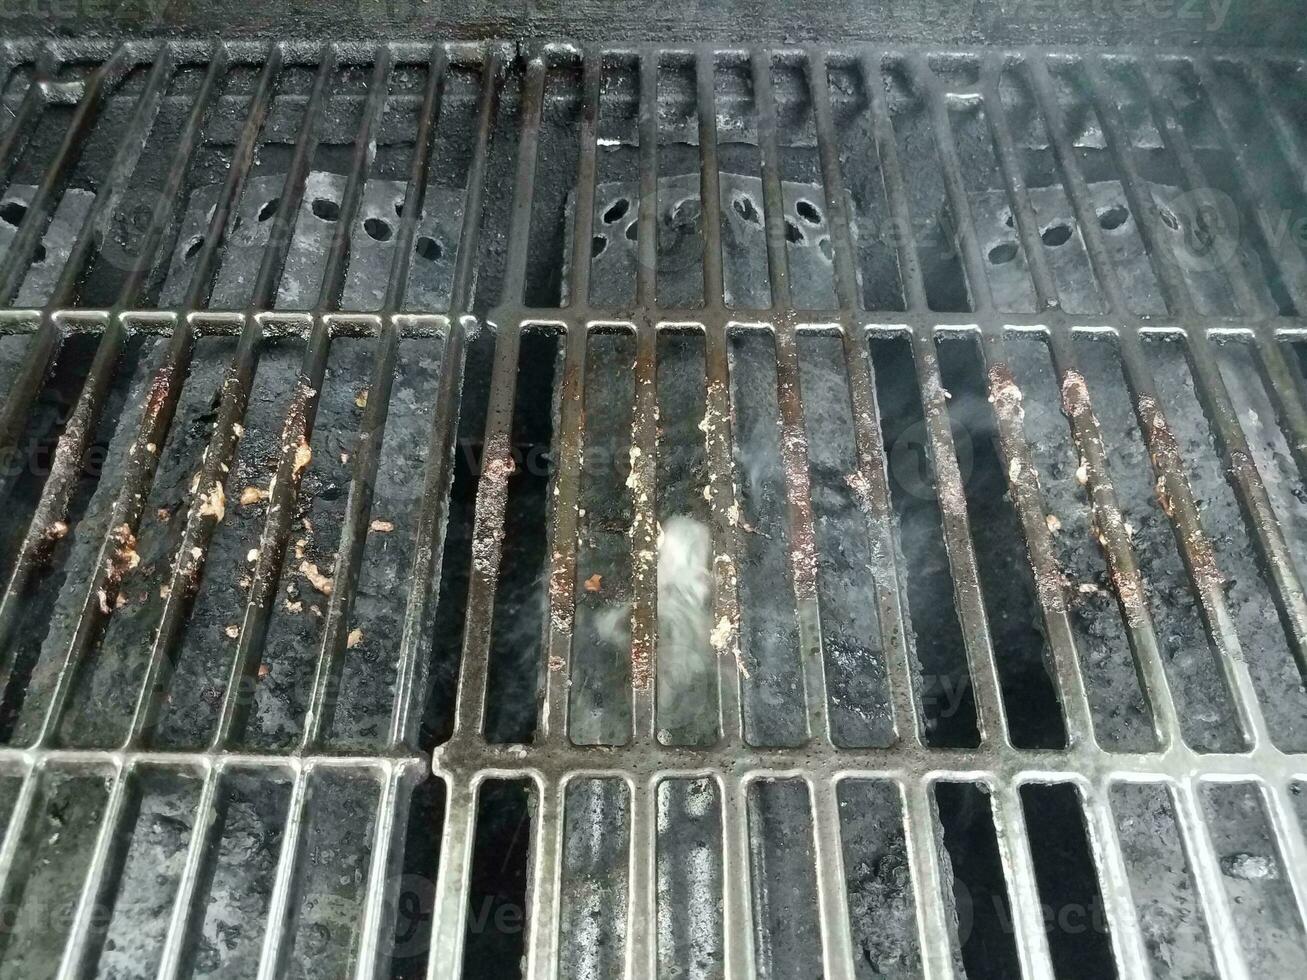 barre sporche o sporche sulla griglia del barbecue con fumo foto